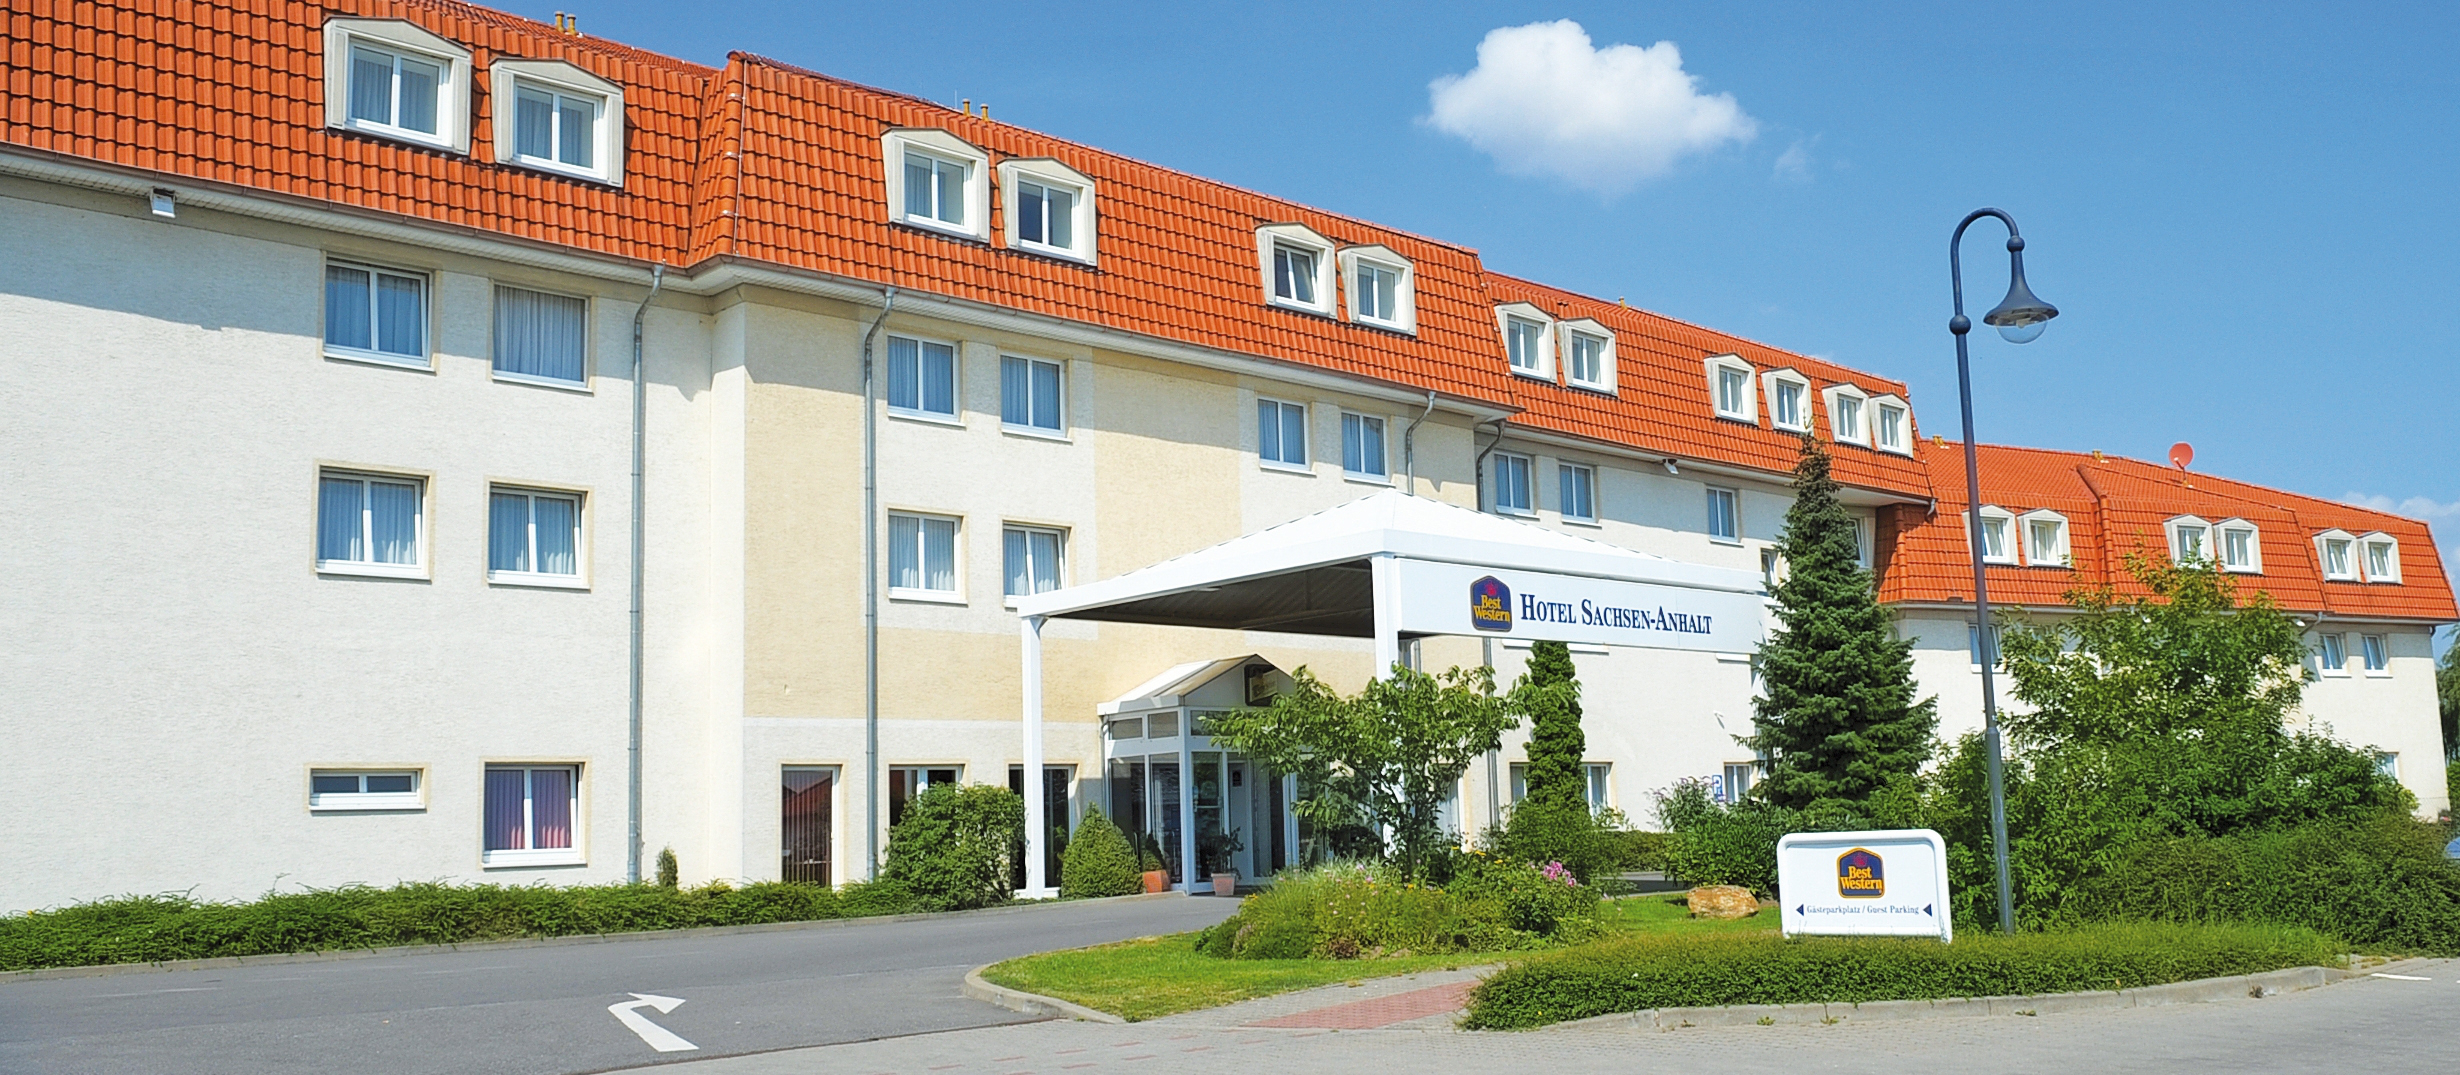 Das Best Western Hotel Sachsen-Anhalt in Barleben bei Magdeburg.
